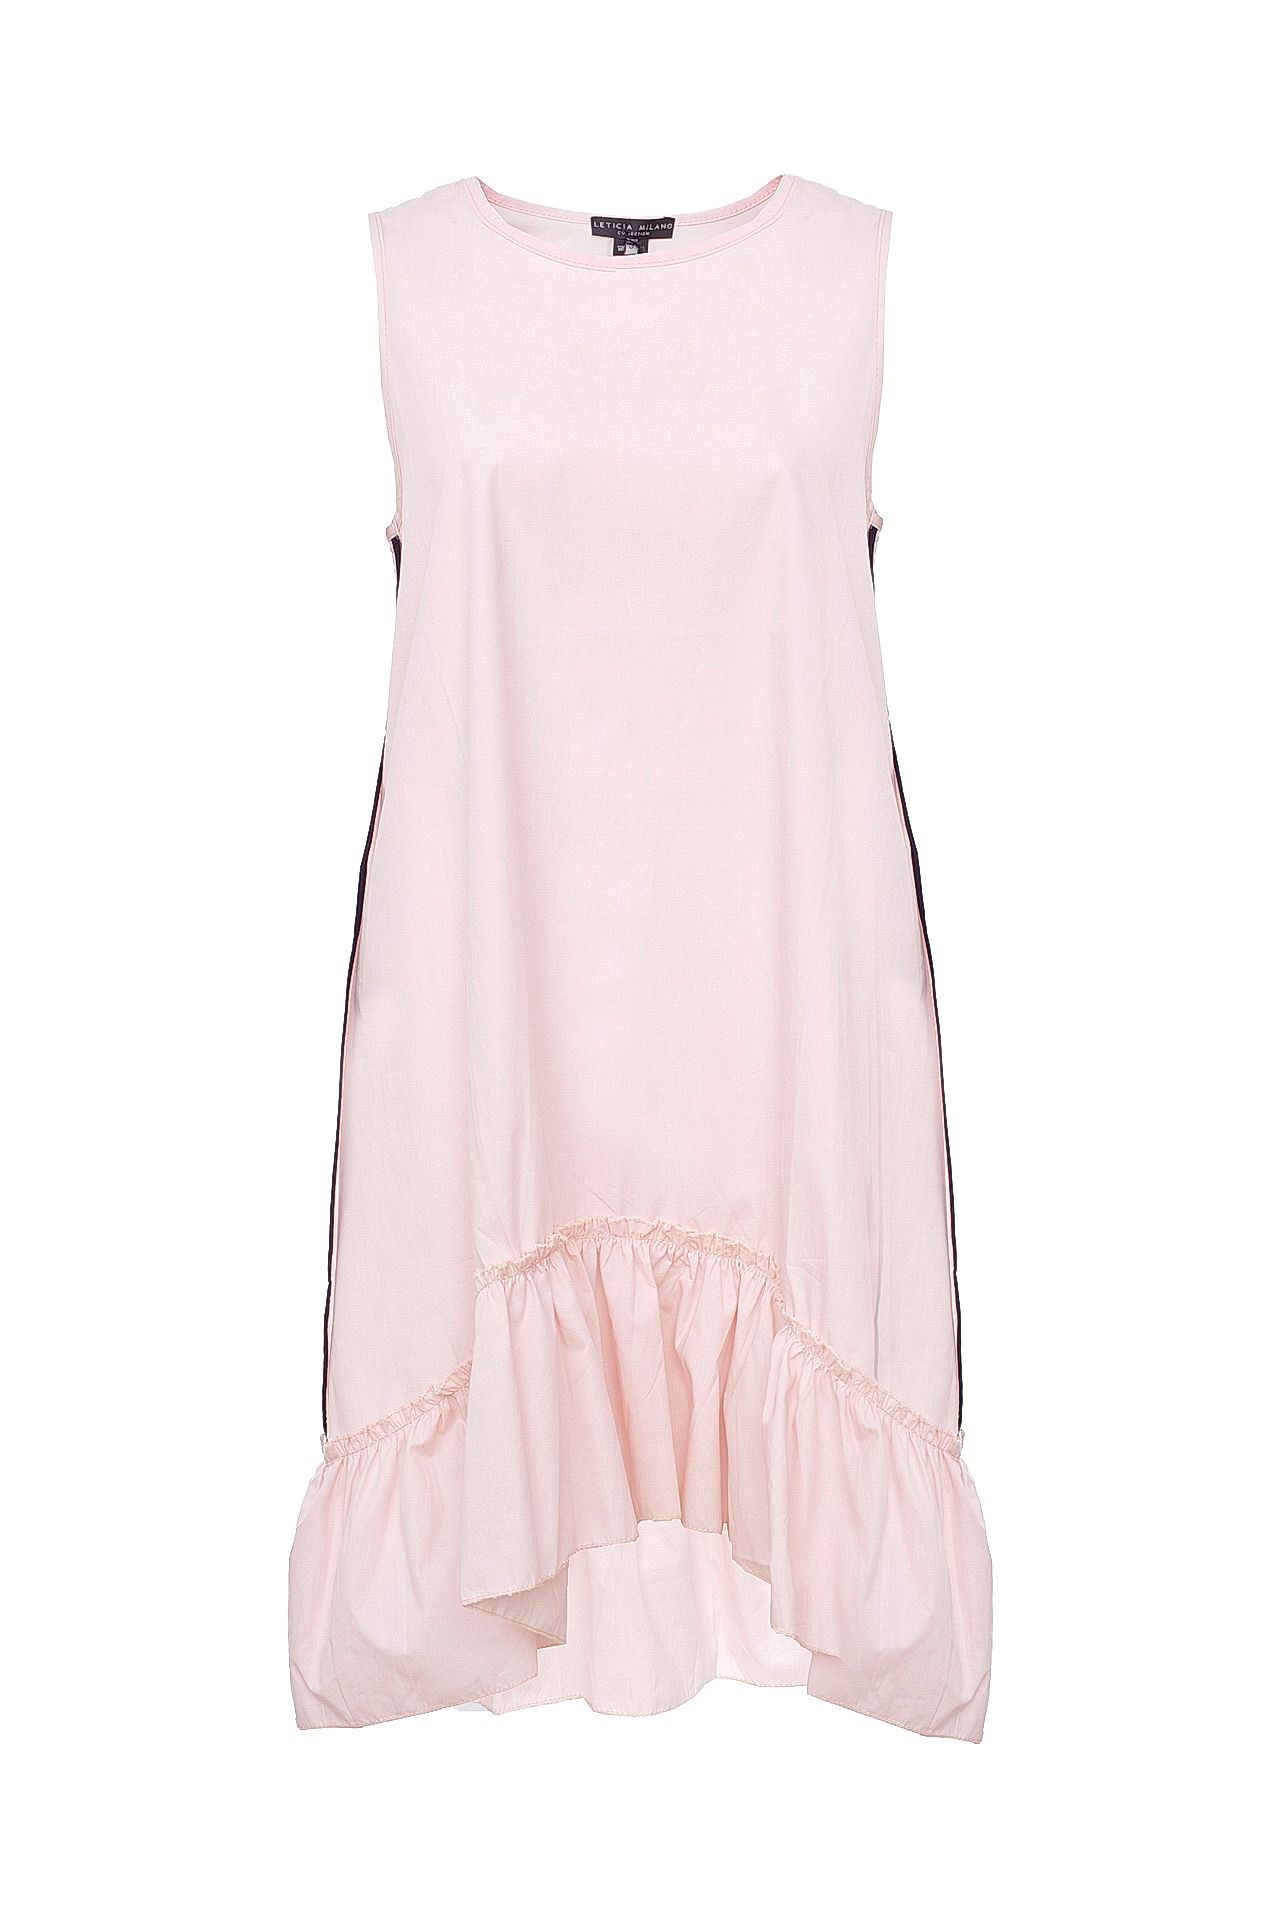 Одежда женская Платье LETICIA MILANO (MJ1769T100/17.3). Купить за 3900 руб.